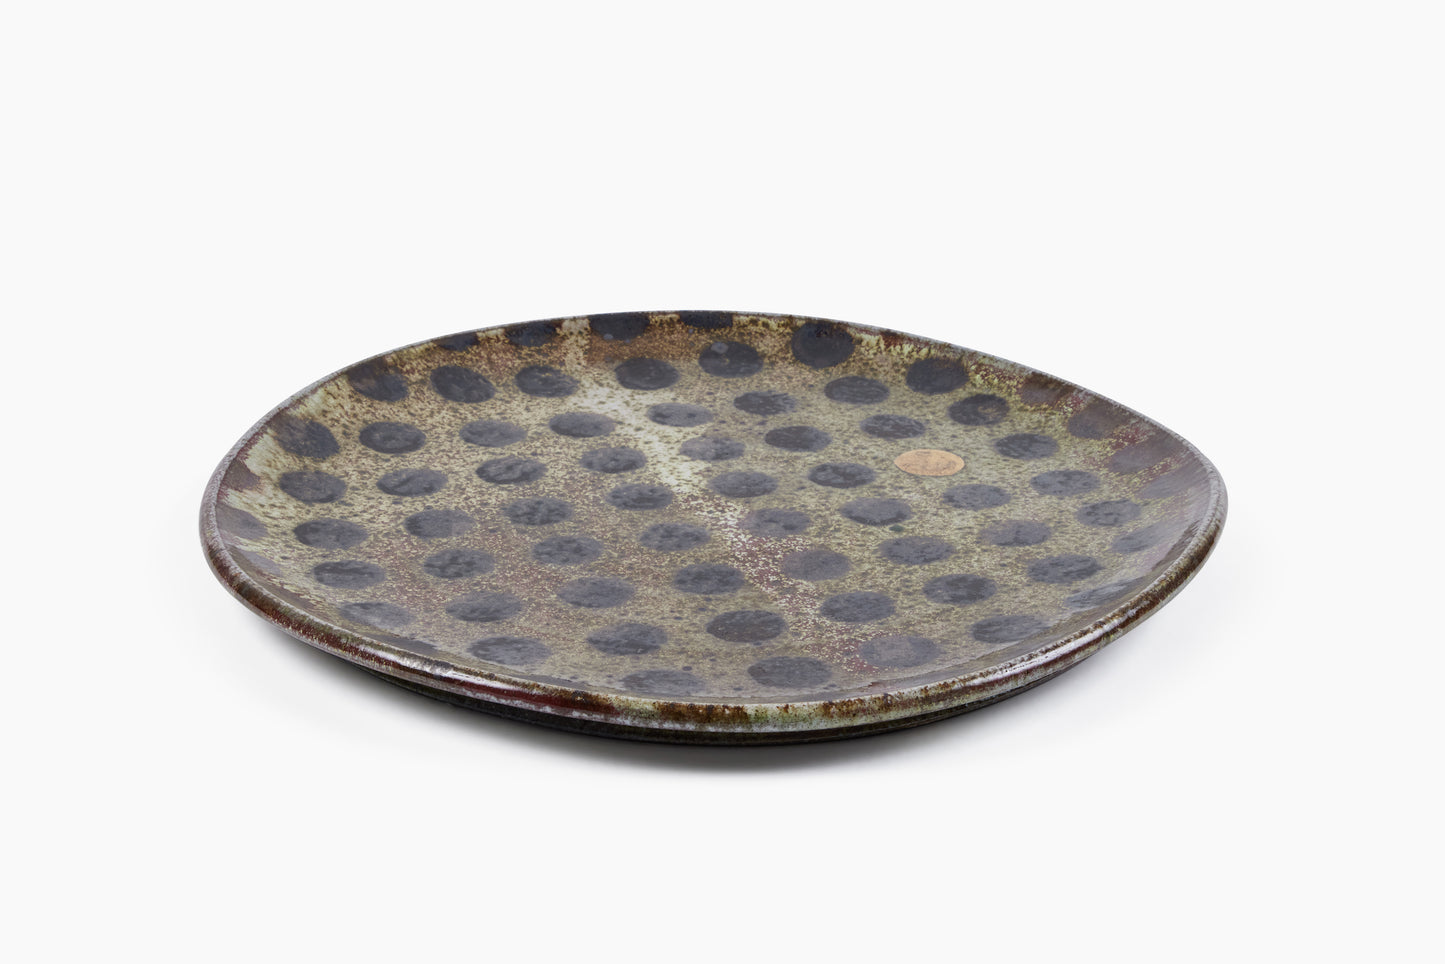 Whitman Shenk Platter